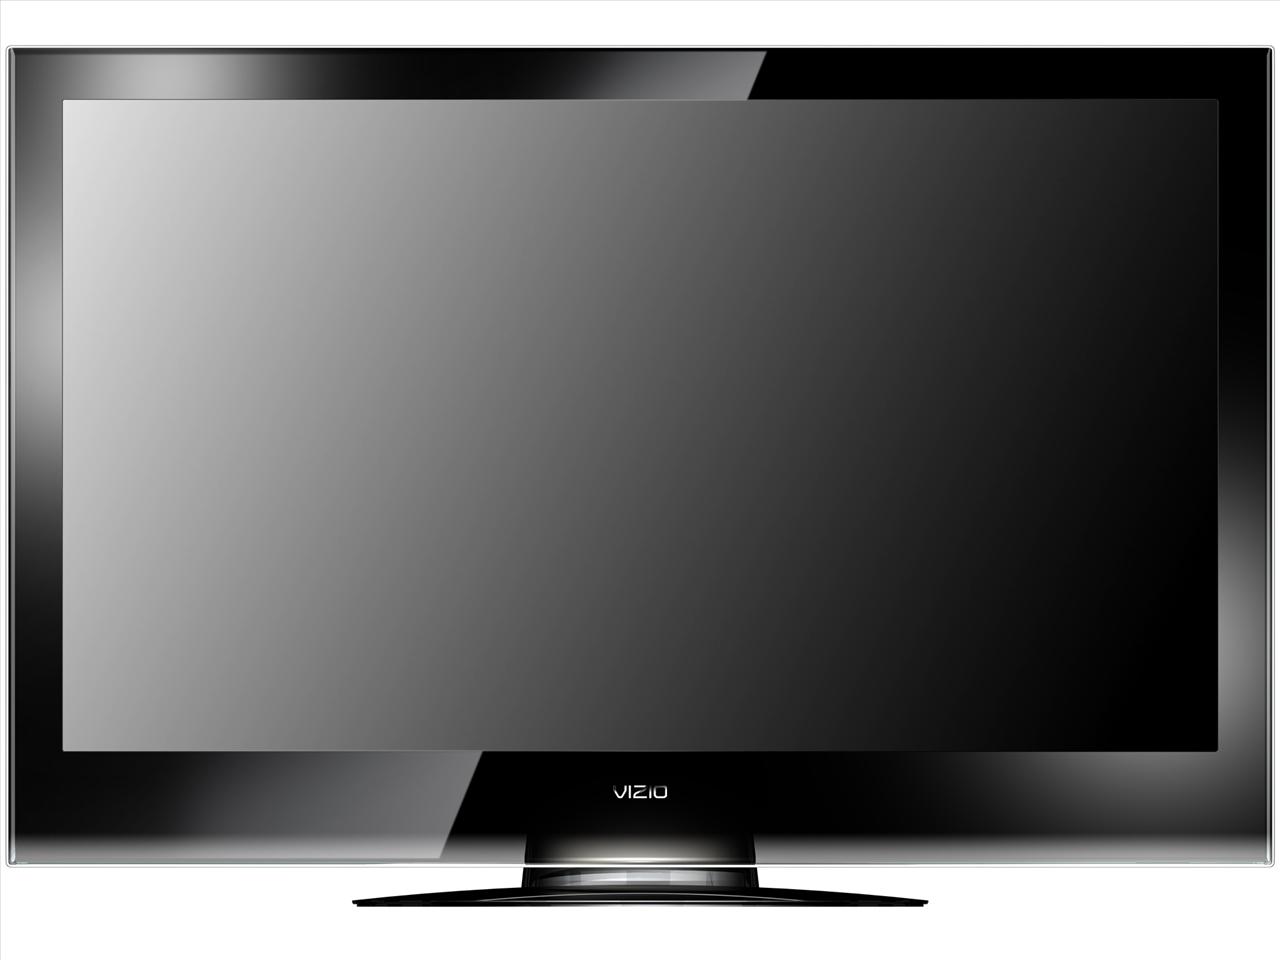 Обзор моделей телевизоров. ЖК телевизор сони 42 2010 модель. Телевизор LG Plazma 2010 года. Телевизор Панасоник 2010 года. Телевизор LG 72 дюйма.